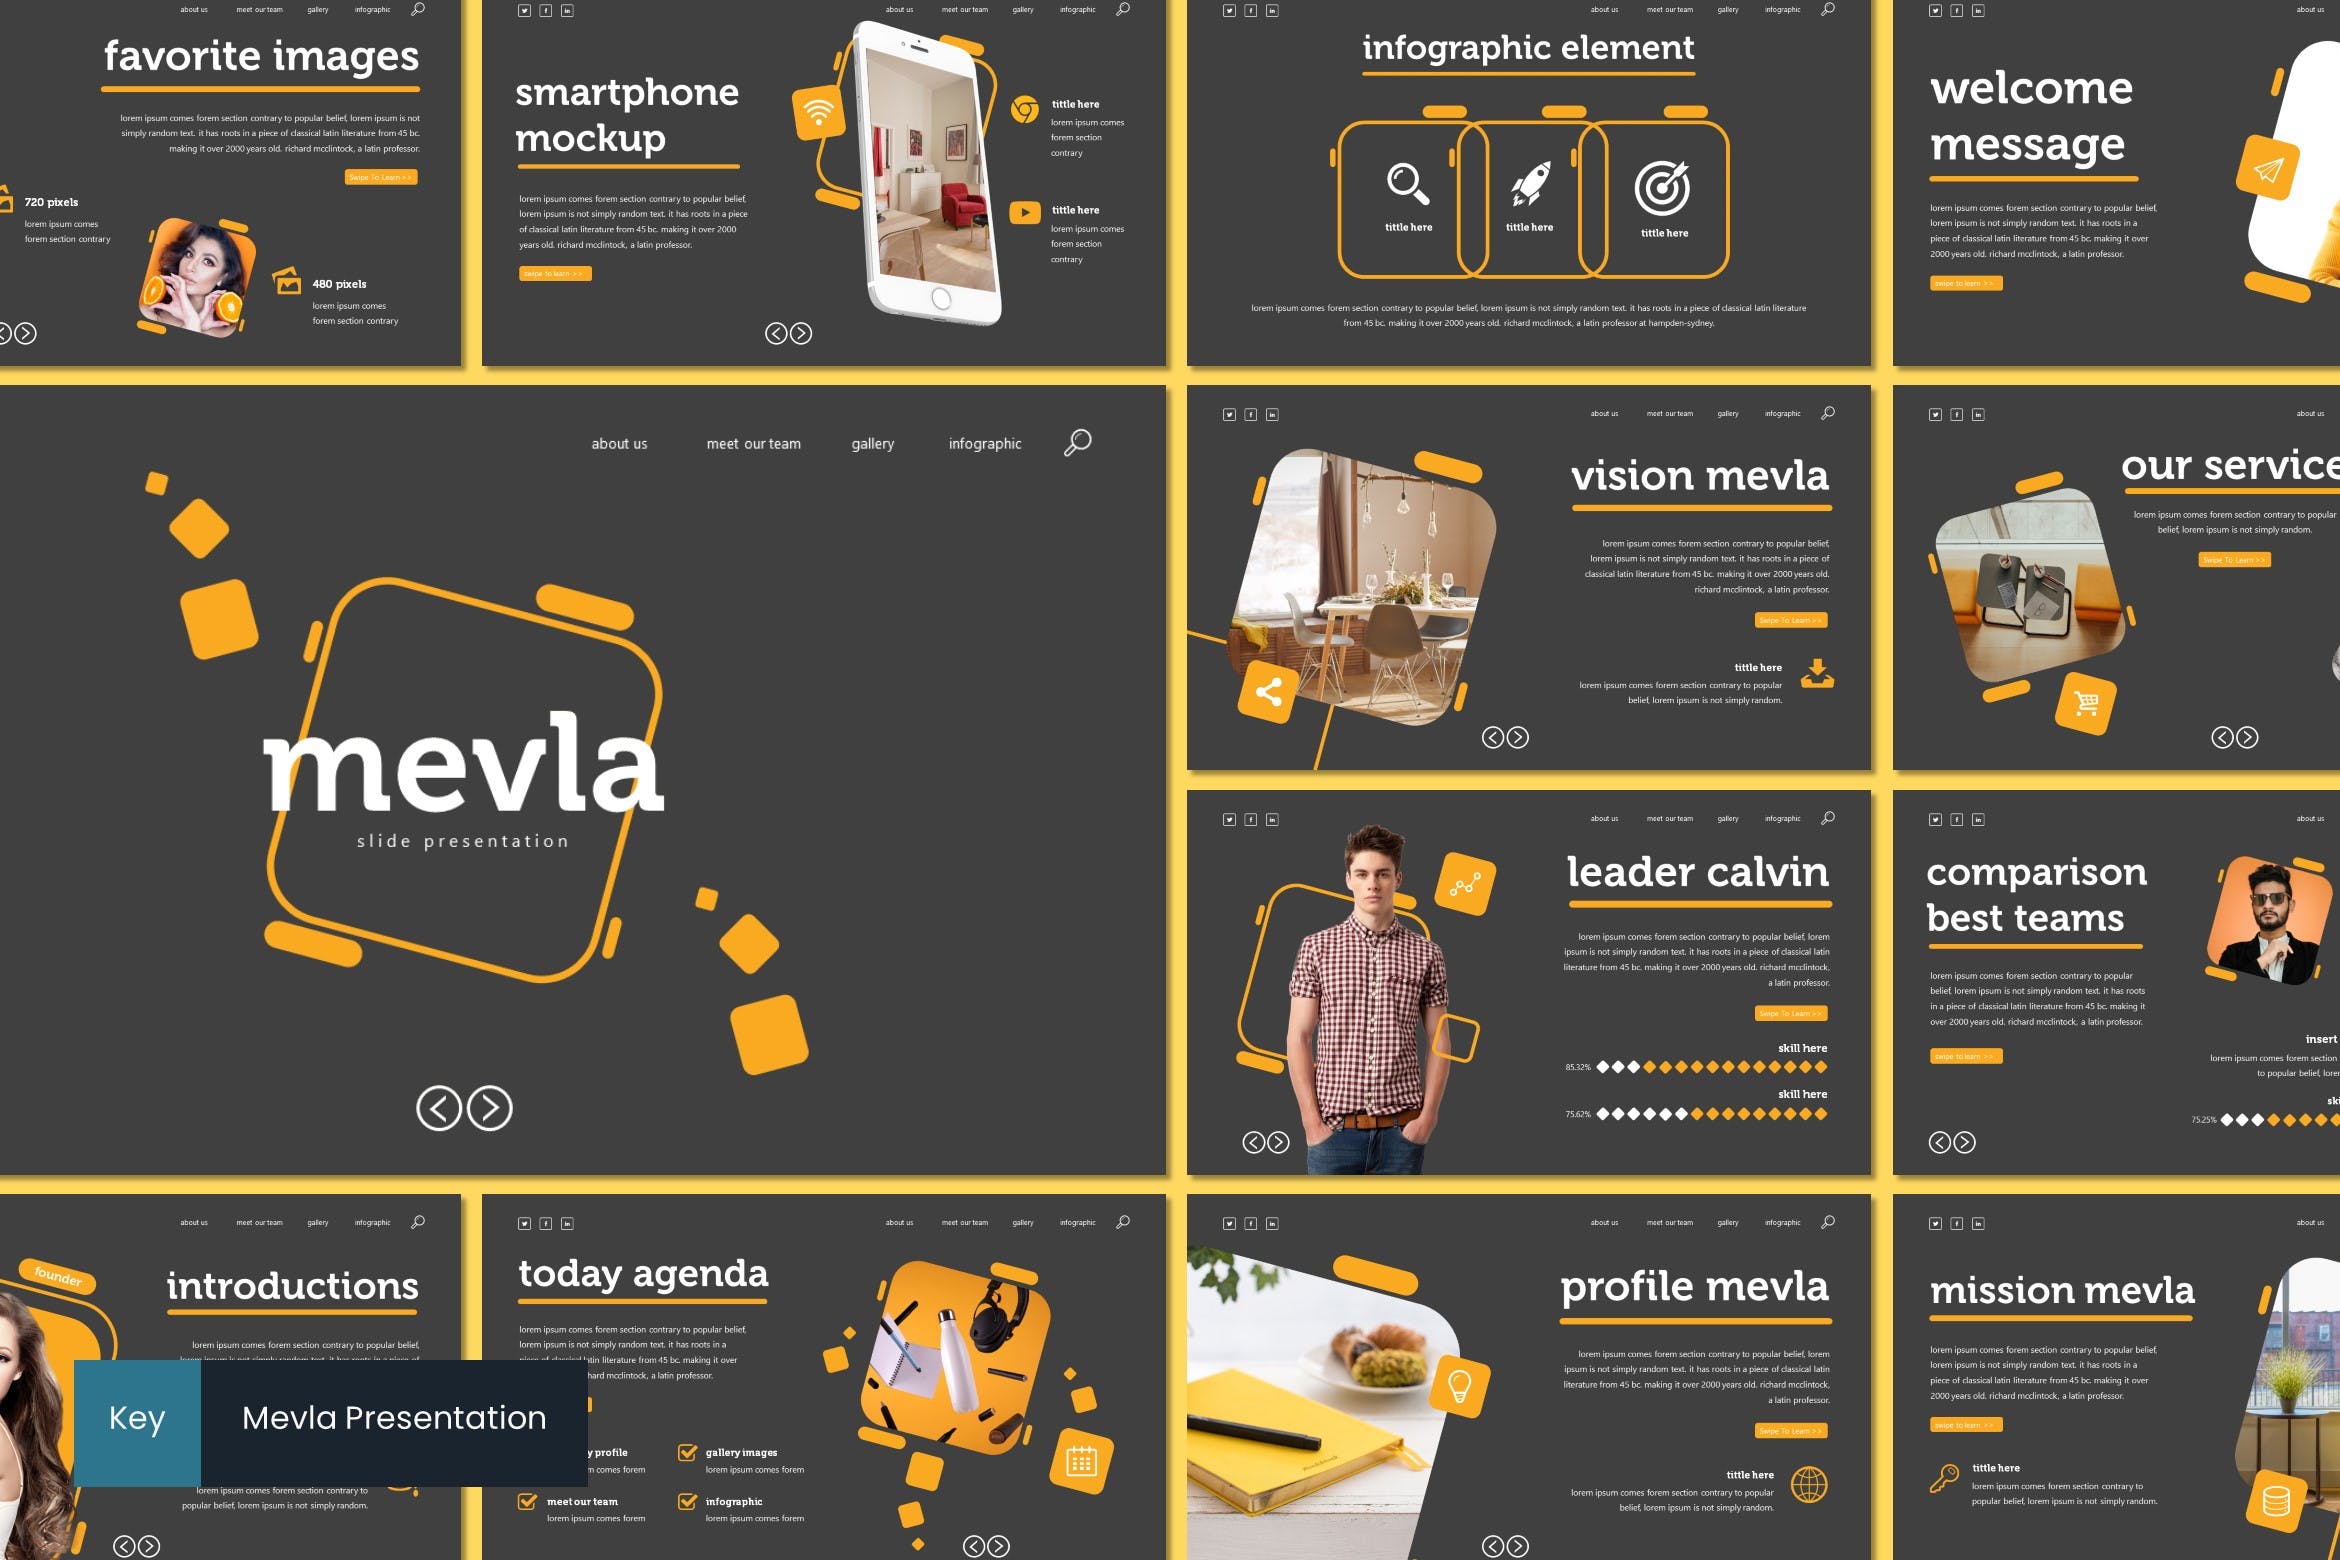 产品展示智能手表样式Keynote幻灯片设计模板 Mevla – Keynote Template设计素材模板